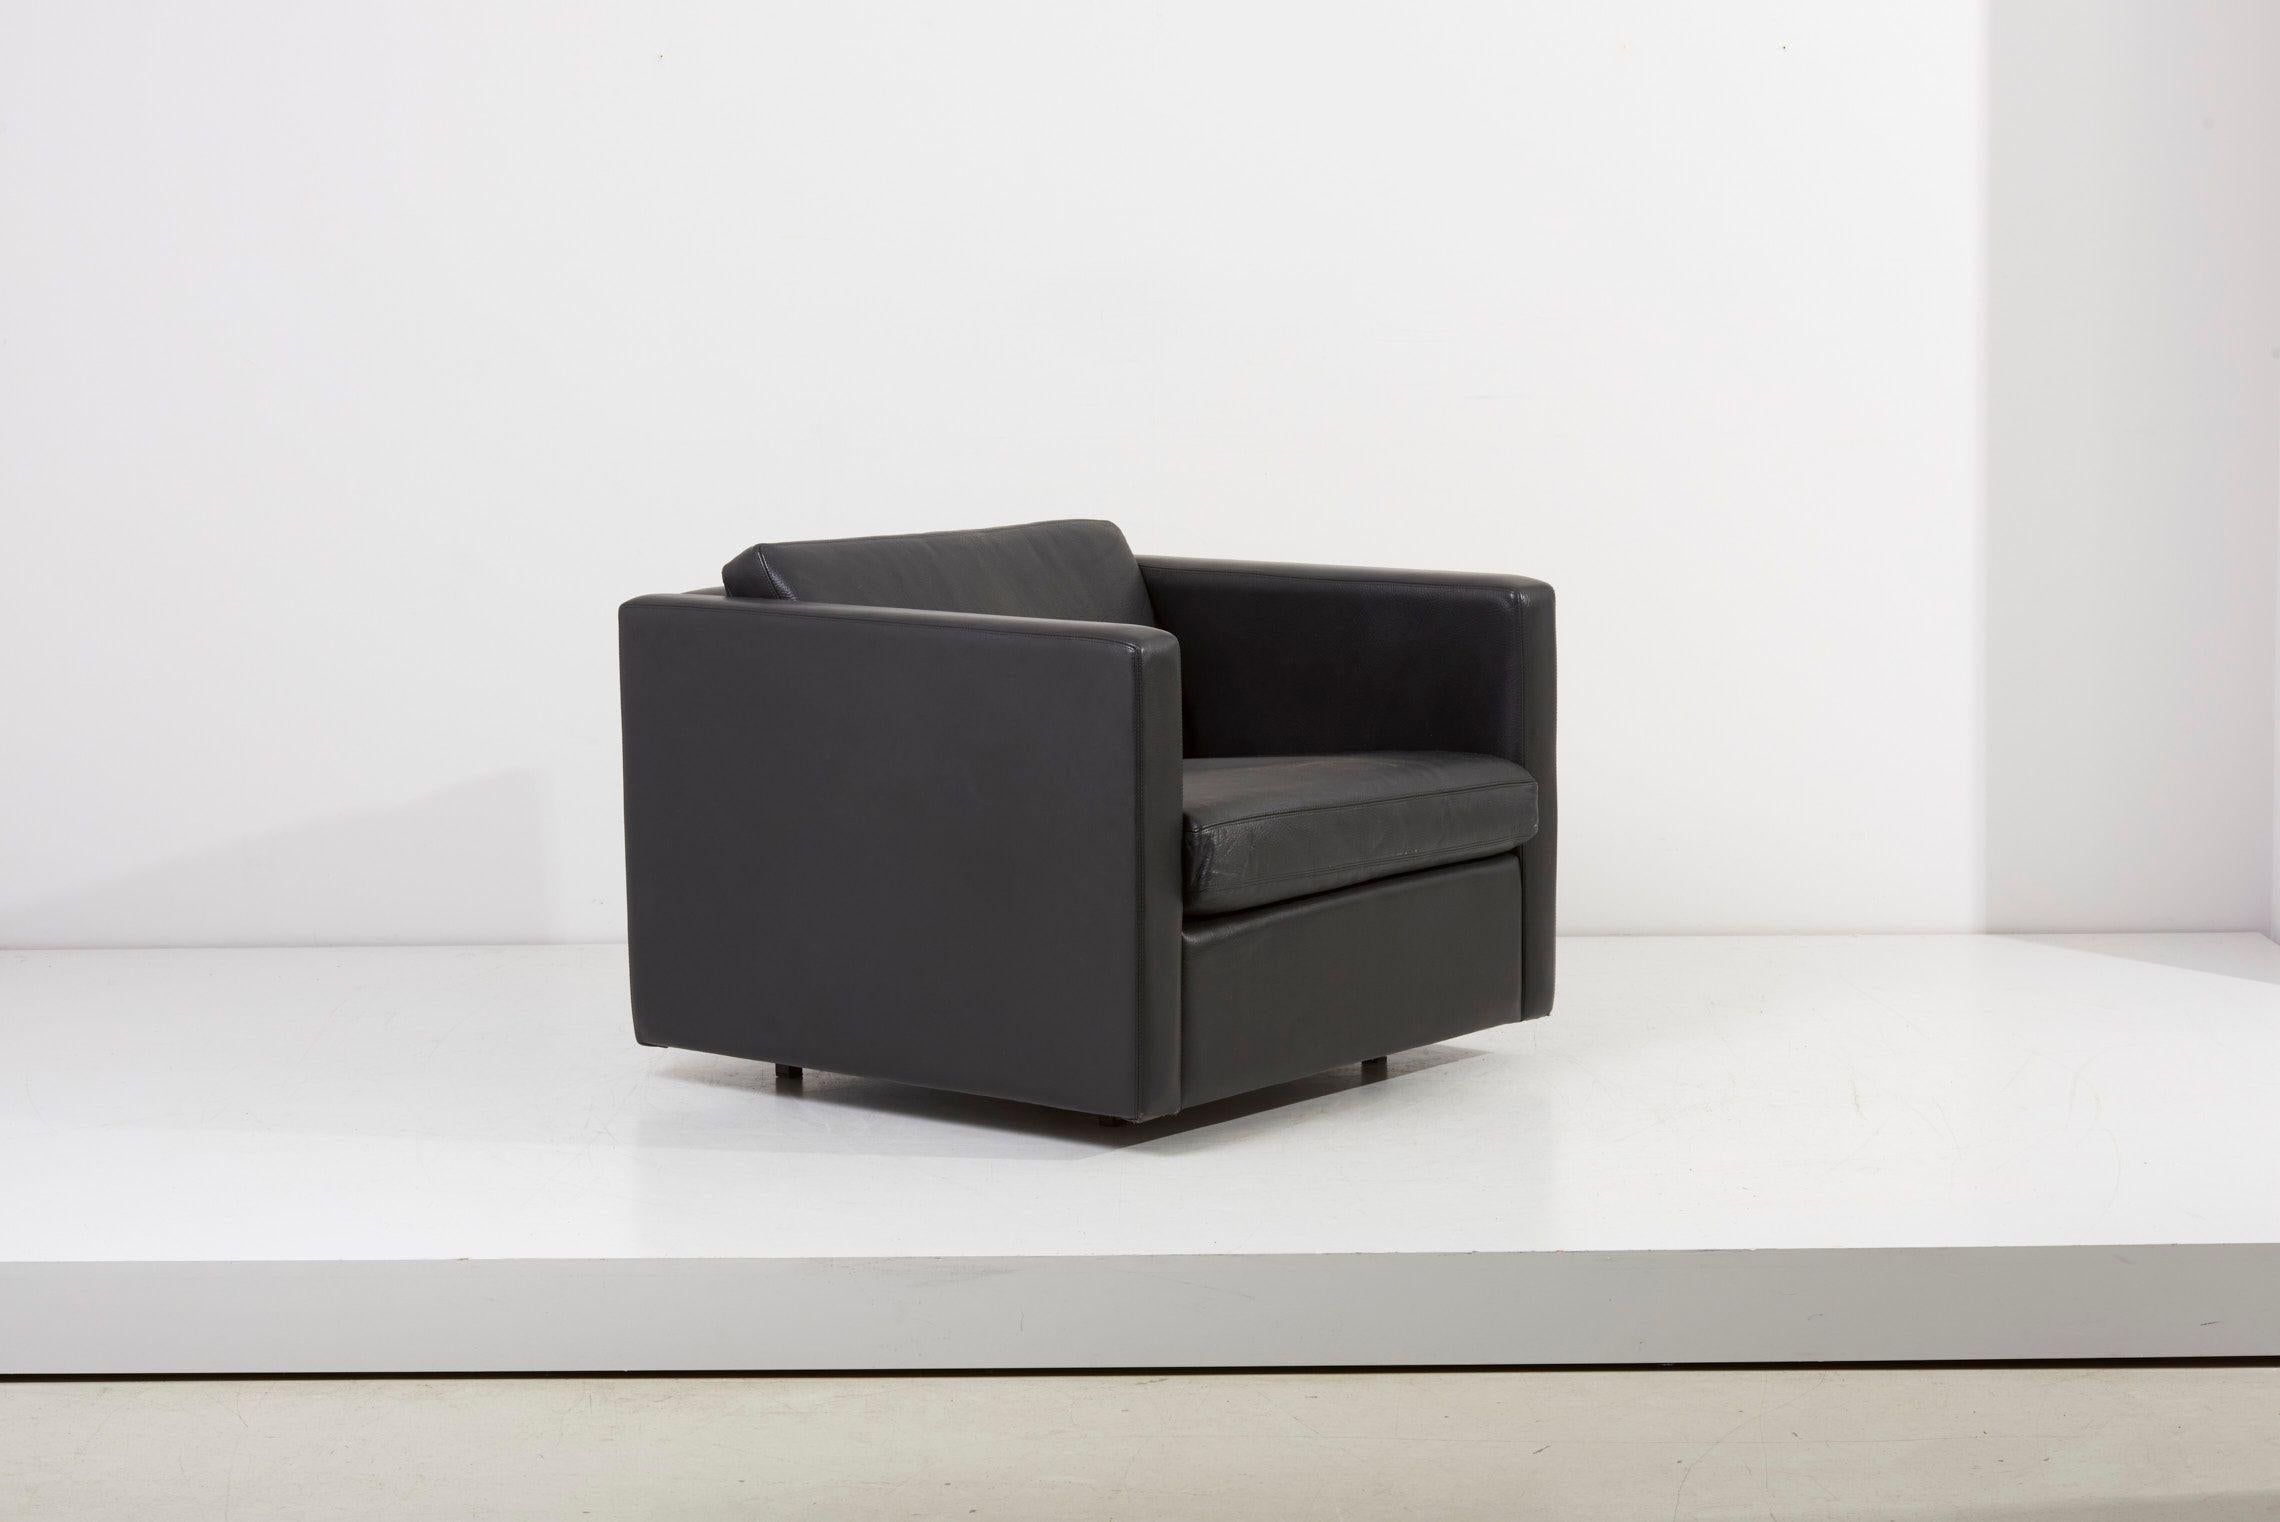 Paire de chaises longues cubiques Charles Pfister pour Knoll. Avec des formes cubistes simples, des lignes claires et une base apparemment flottante, les chaises longues présentent toutes les caractéristiques d'un design Knoll classique.